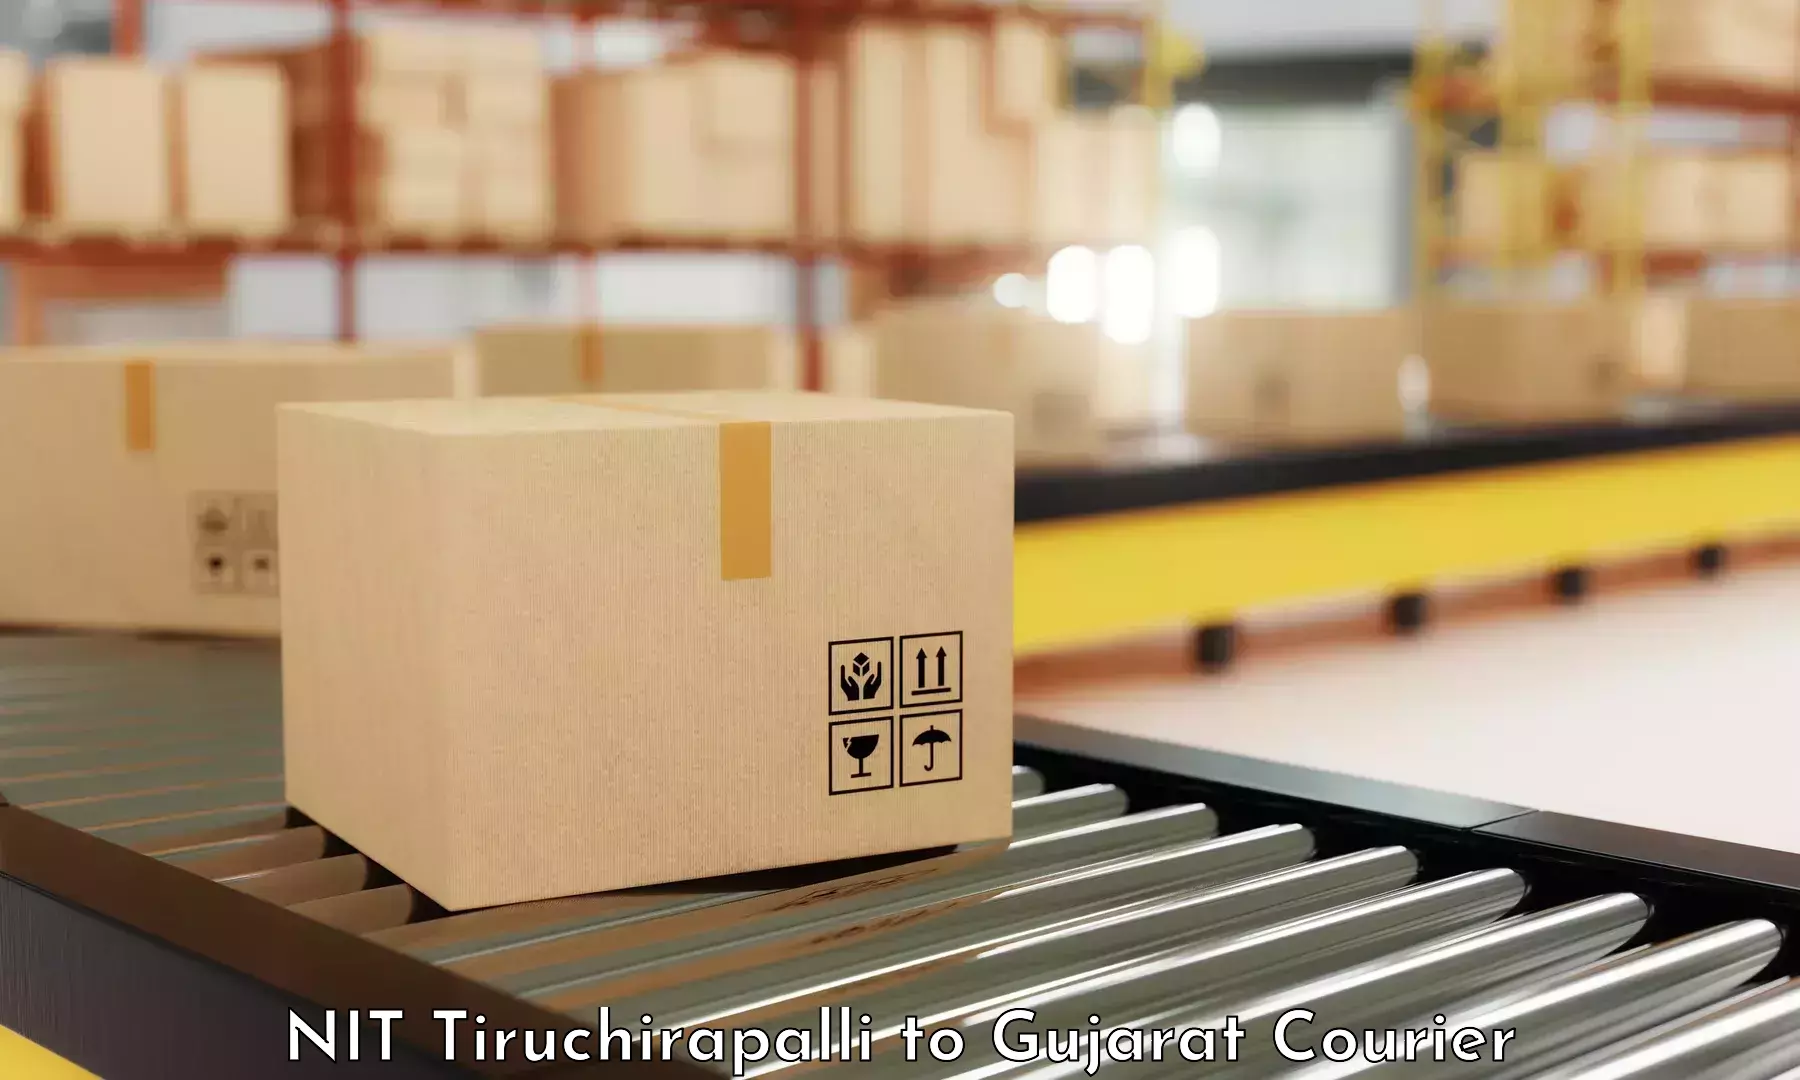 Next-generation courier services NIT Tiruchirapalli to Santrampur